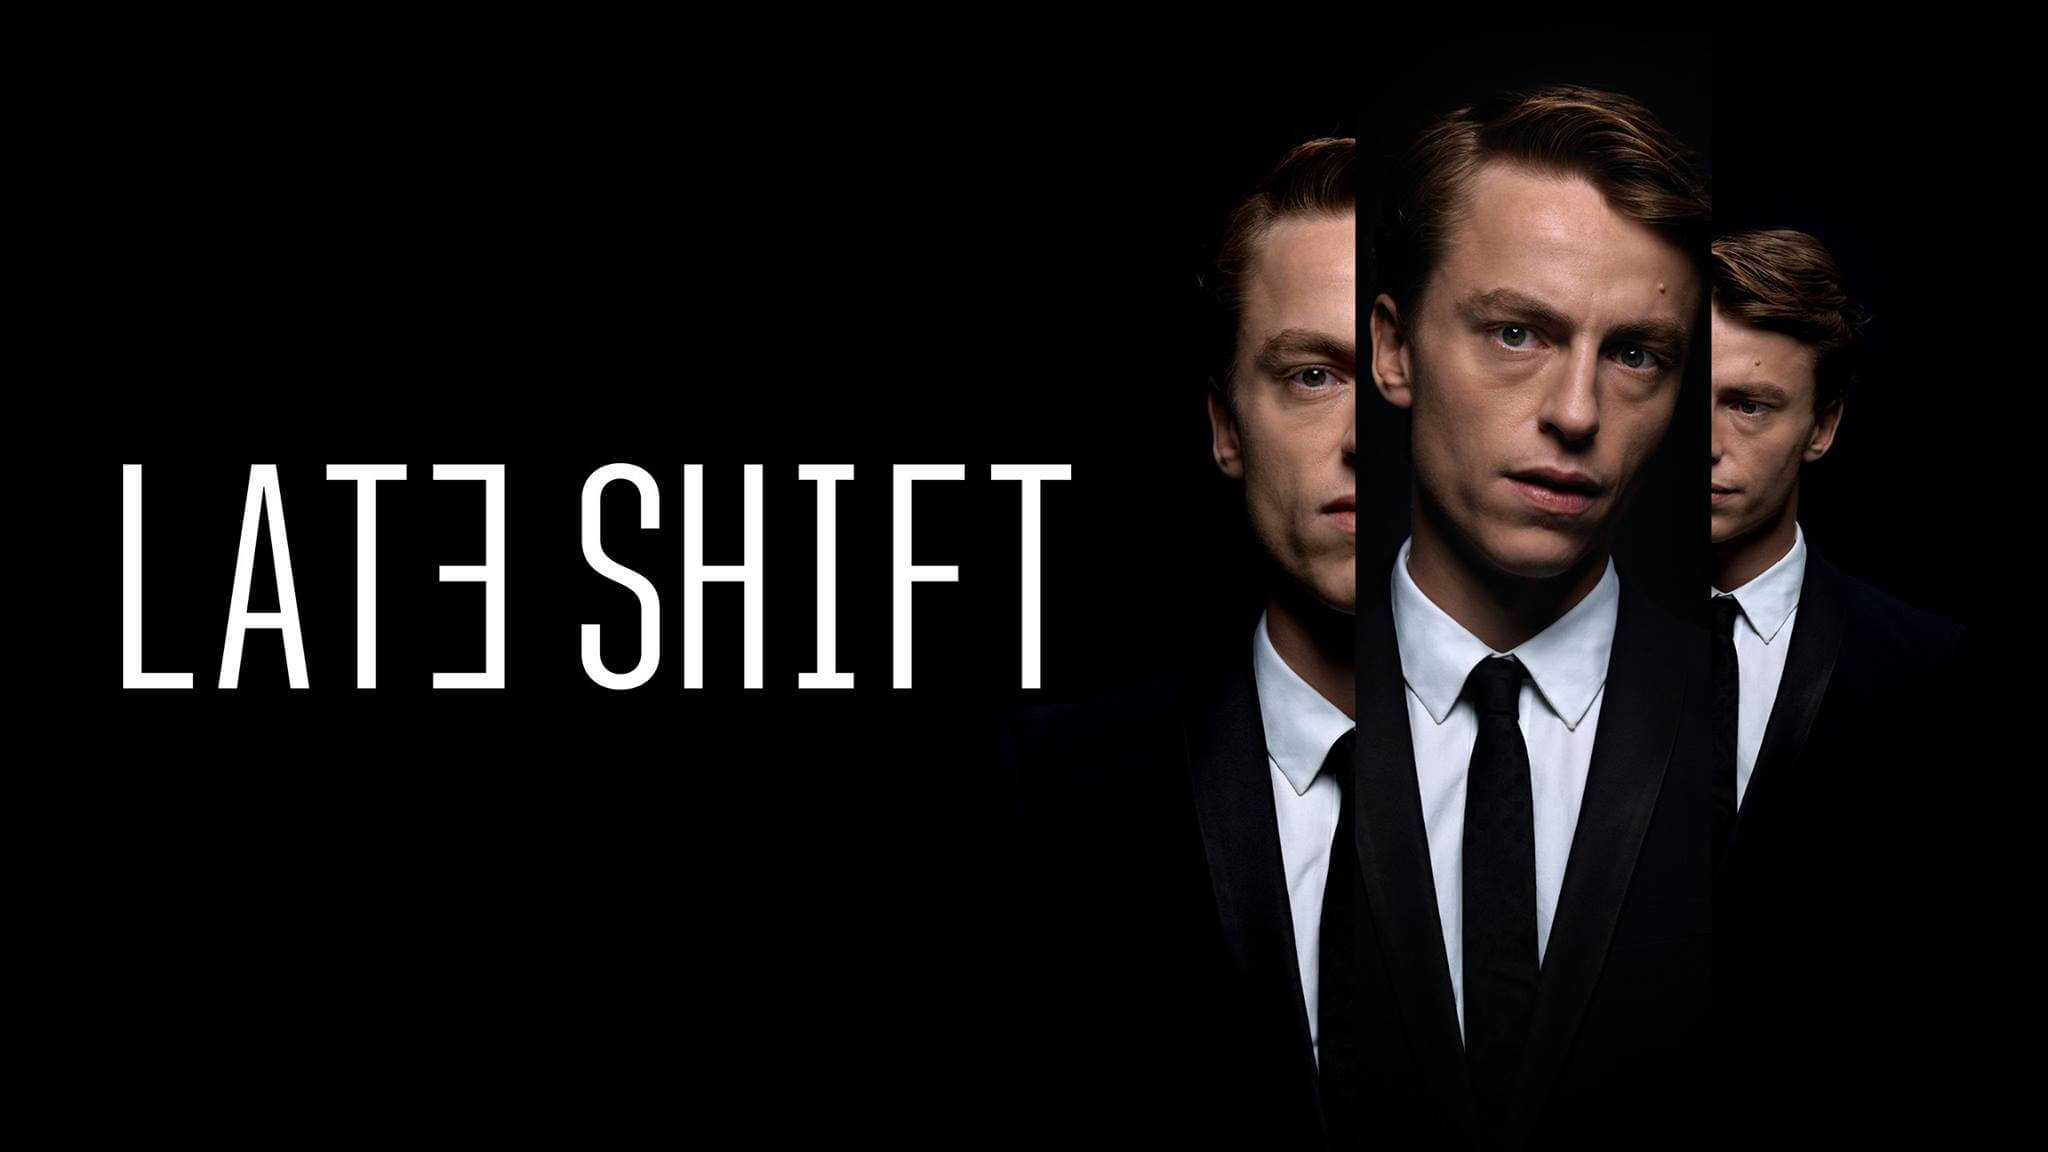 Der erste interaktive Film der Welt: Late Shift in der OV – ein neuartiges Kinoerlebnis!